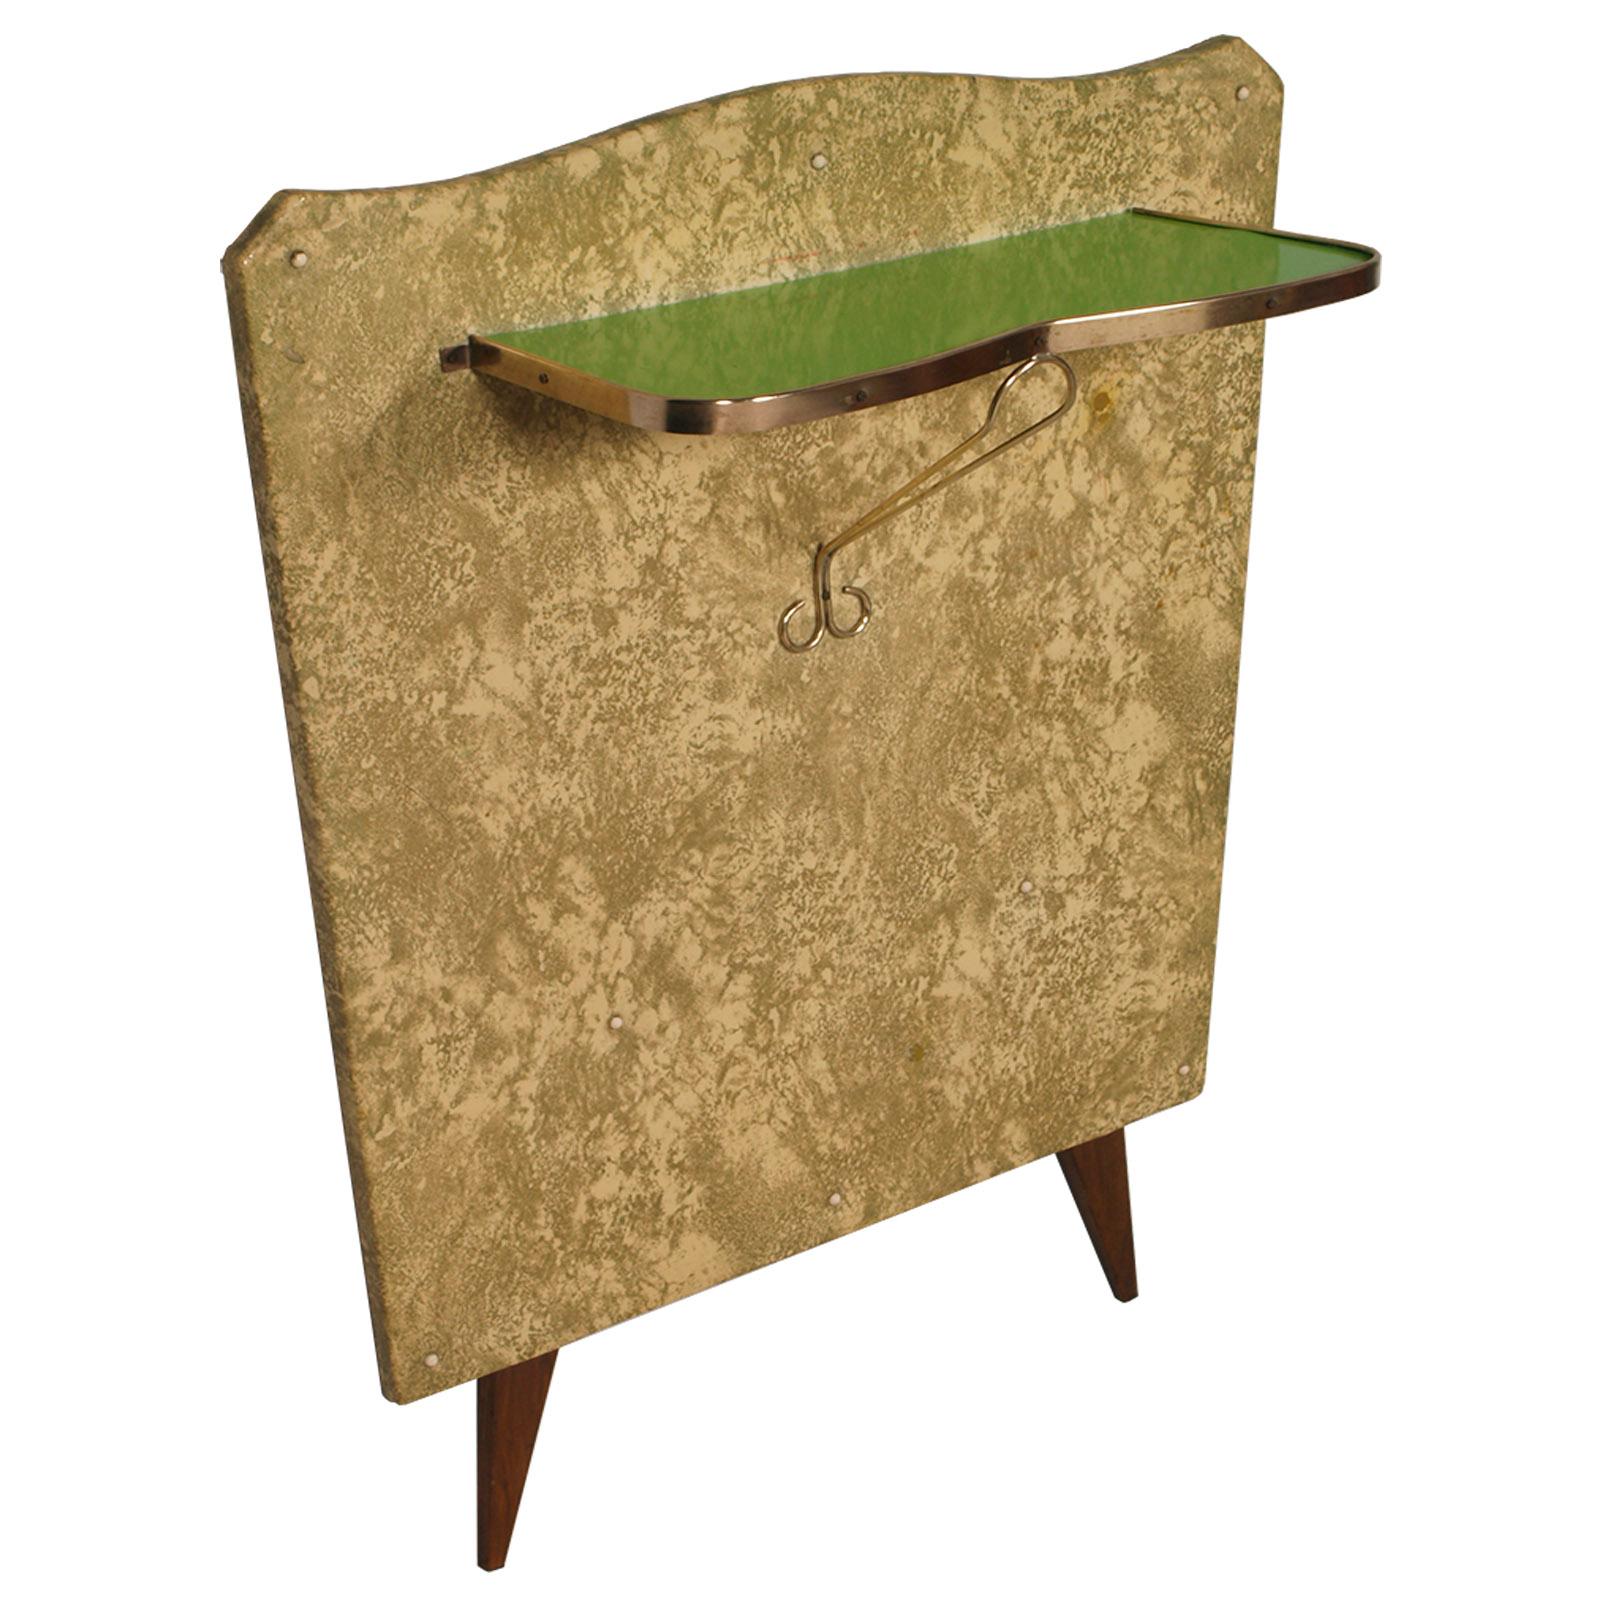 Console des années 1950 en laiton doré et tissu plastifié par Brugnoli Mobili Cantù, façon Pier Luigi Colli, plateau en verre laqué vert. Un design essentiel simple et élégant.